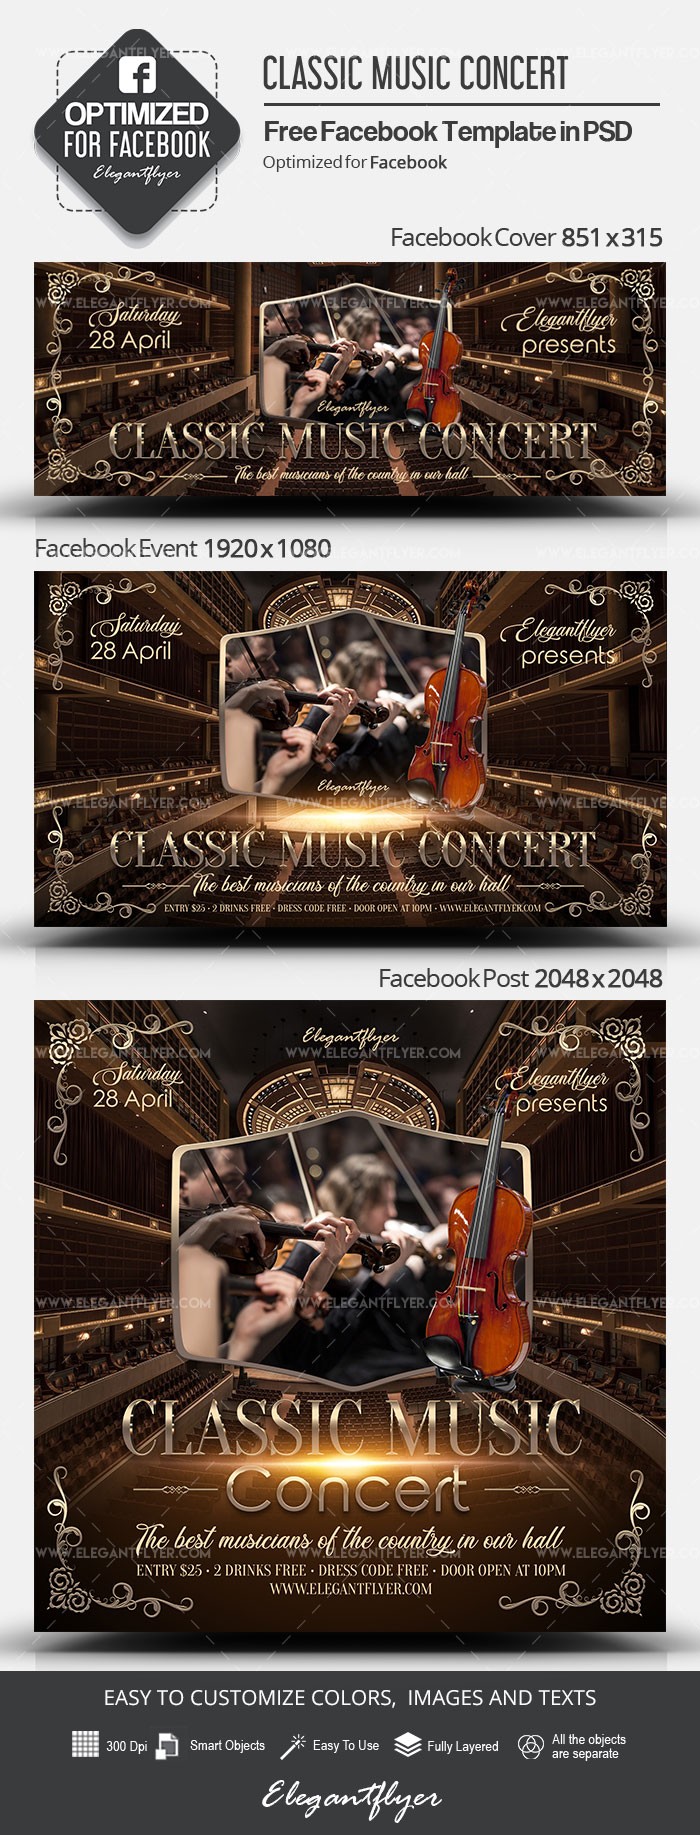 Concert de musique classique sur Facebook. by ElegantFlyer